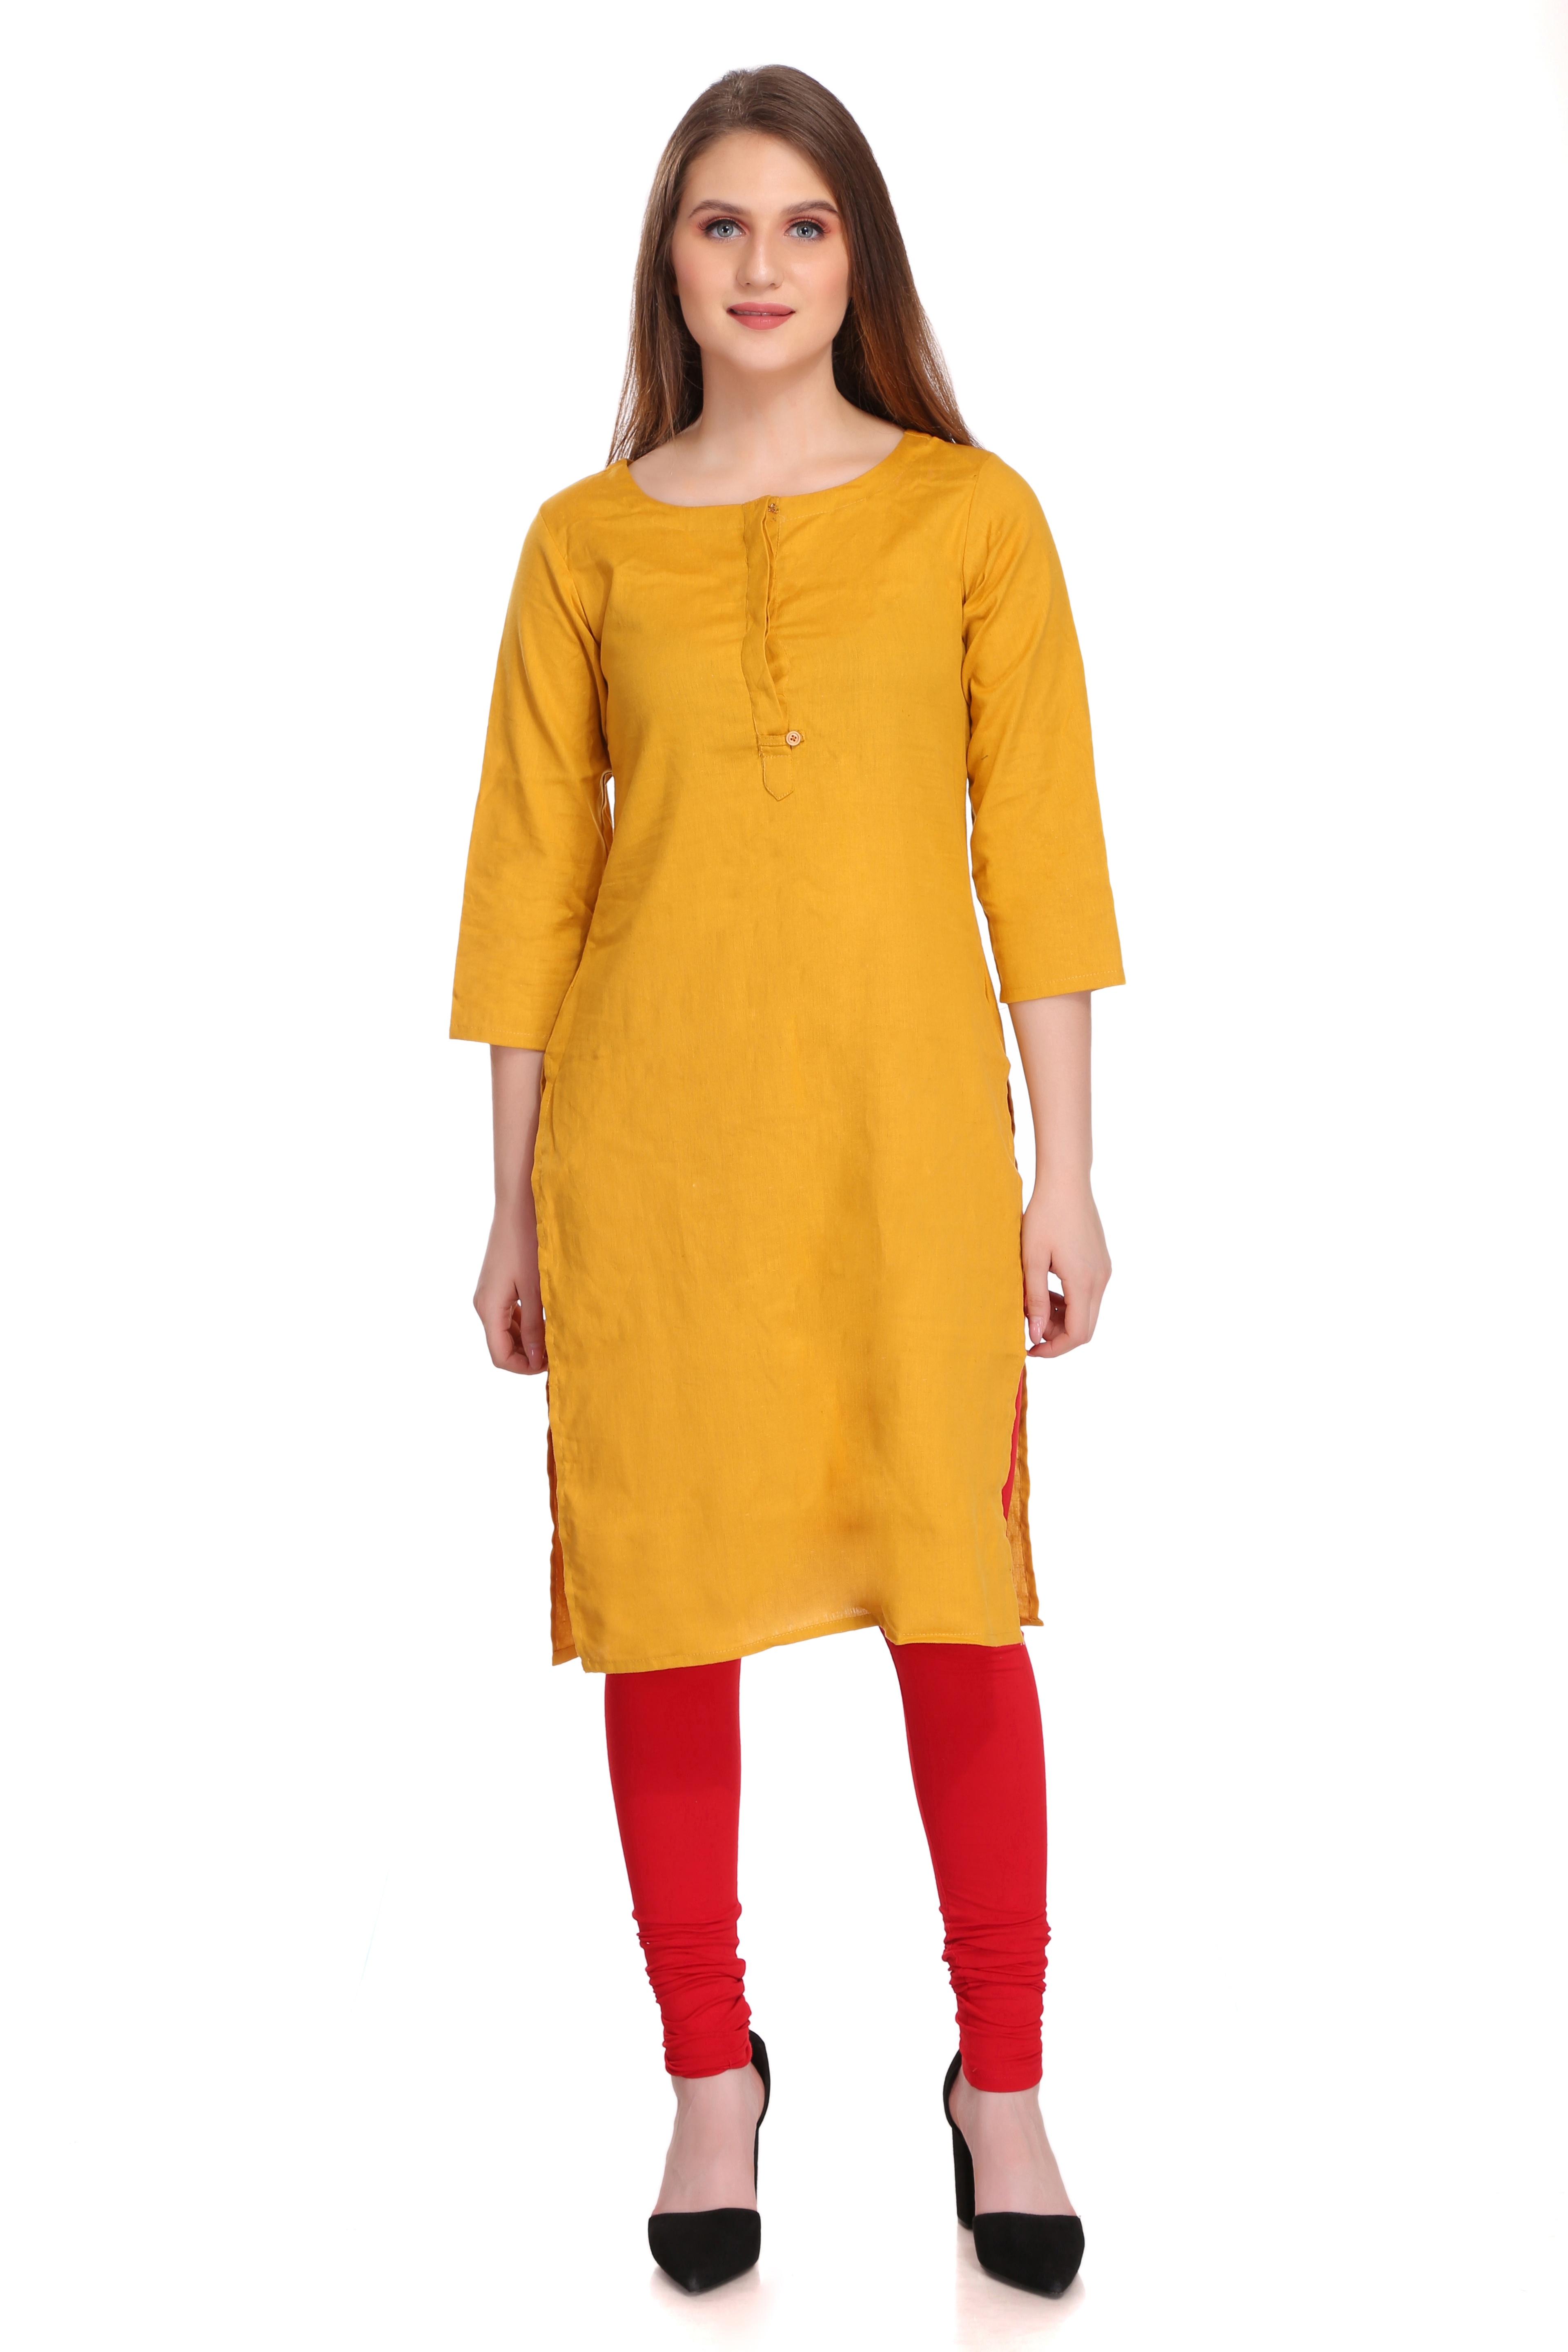 Colorfit | Colorfit Cotton Lycra Churidar Length Leggings for Women